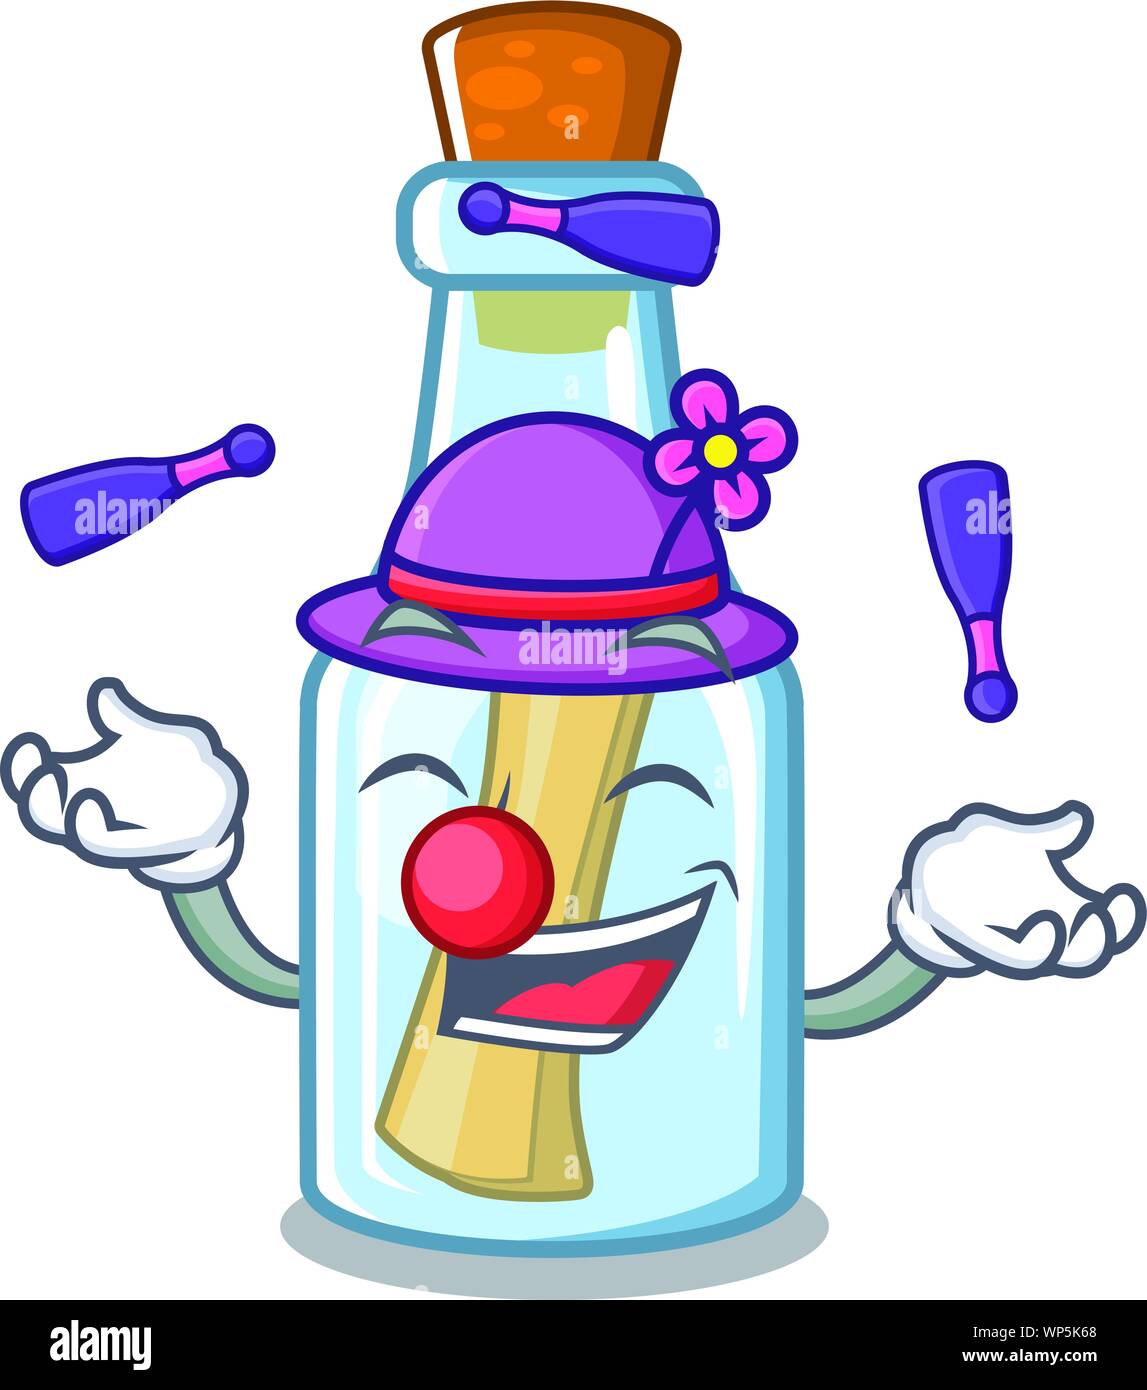 Message de jonglage bouteille en forme avec mascot Illustration de Vecteur